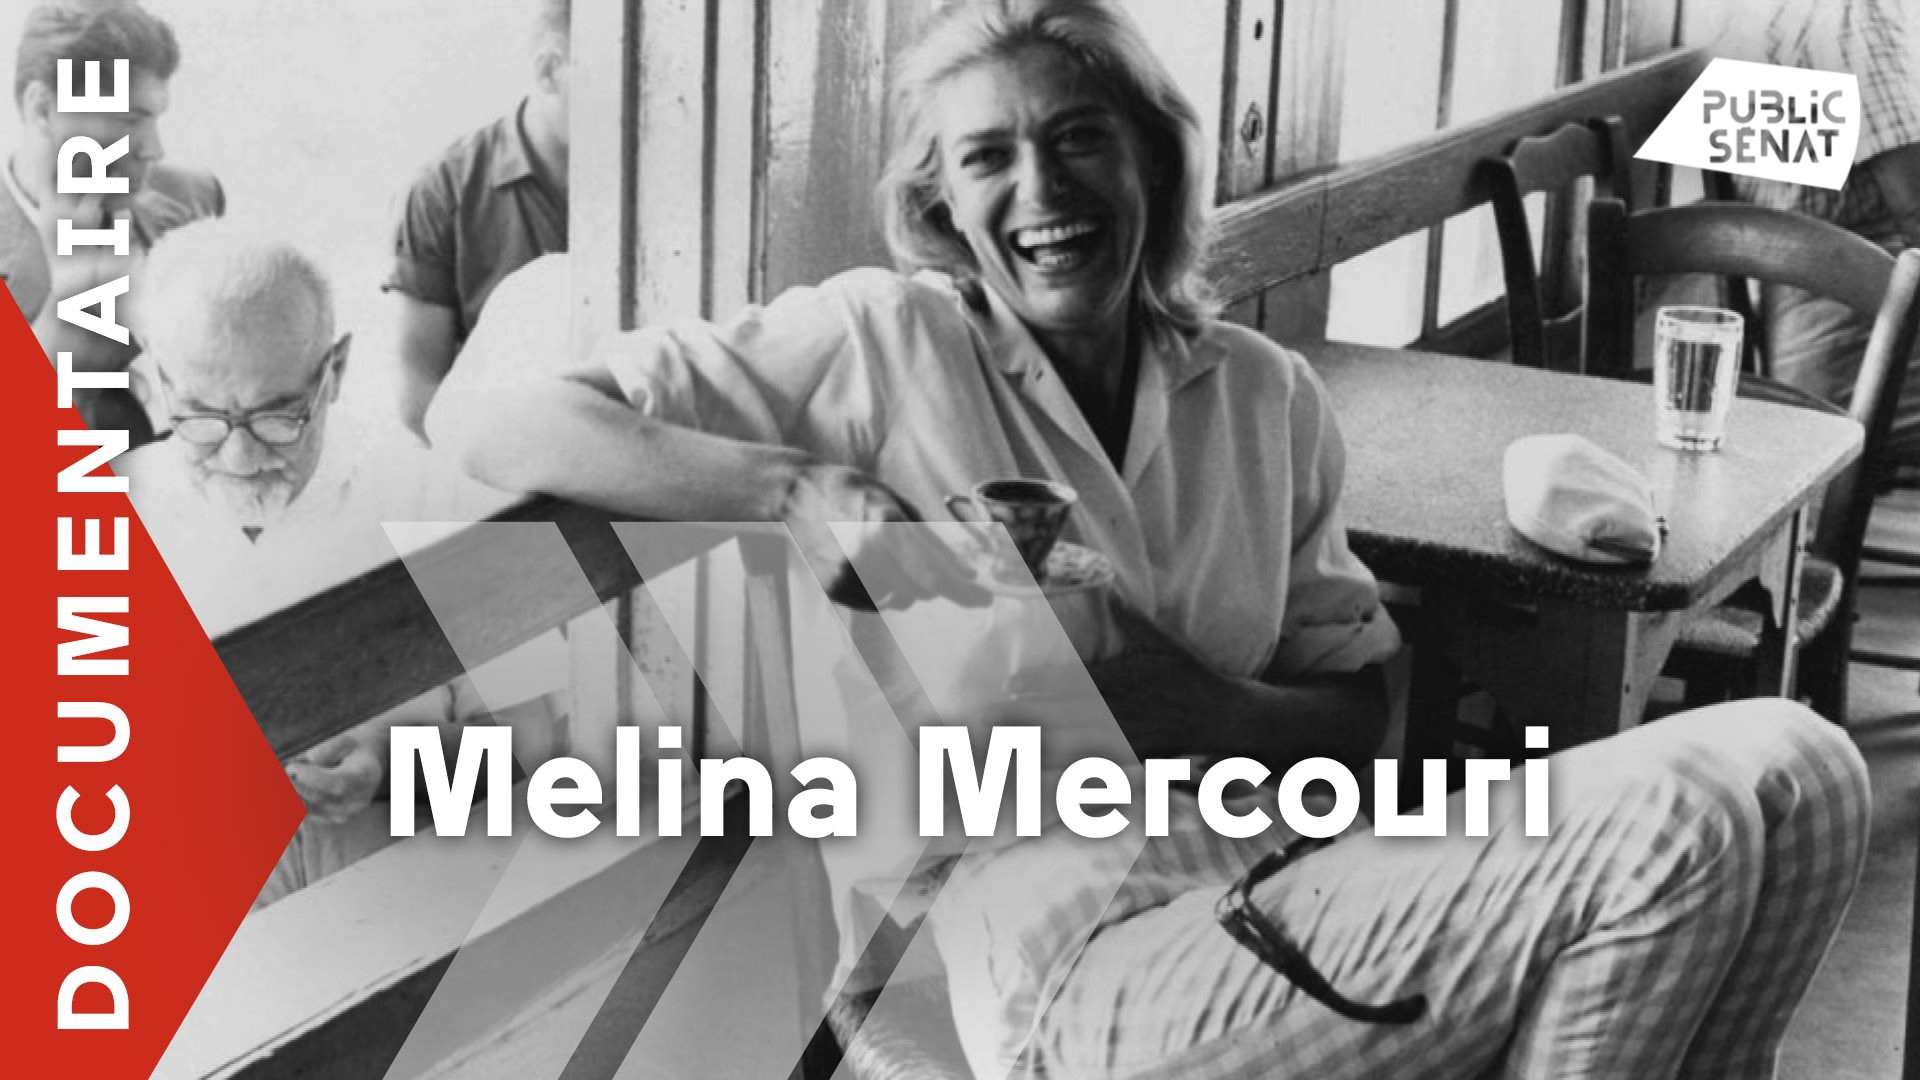 Meline Mercouri, tragédienne grecque et amoureuse